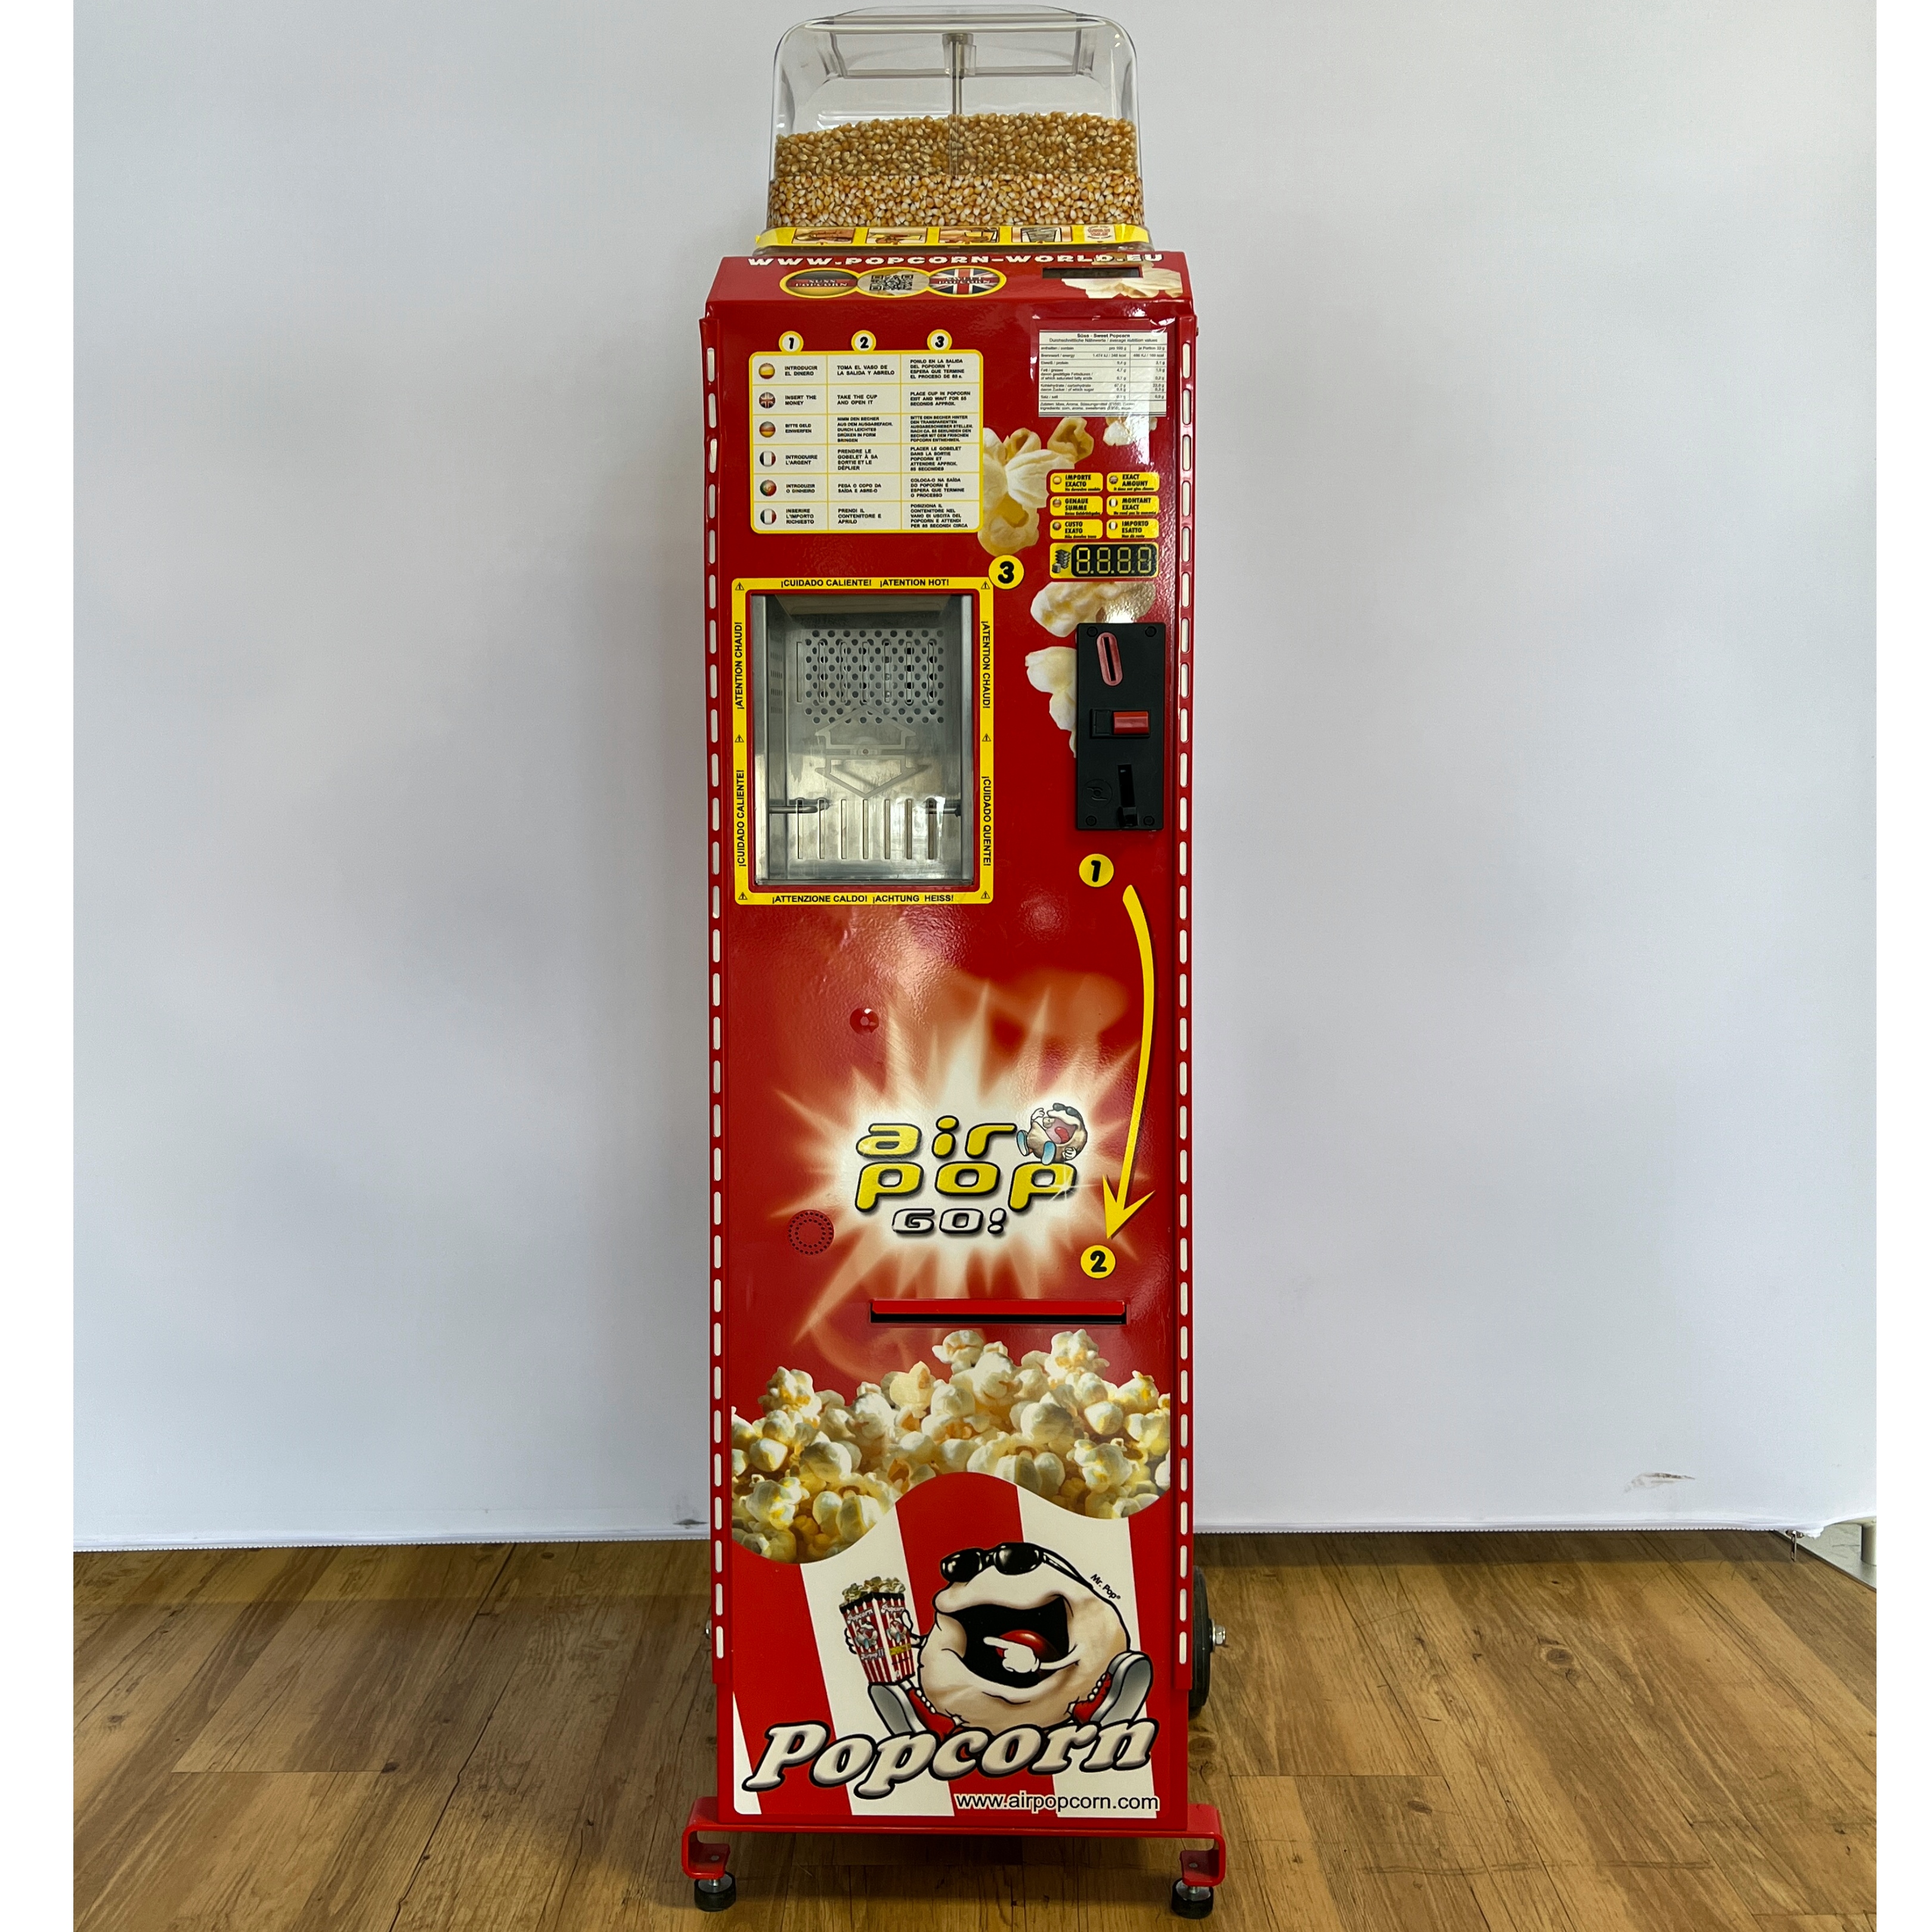 Popcorn-Automat Airpop GO - optische Mängel, wenig gebraucht